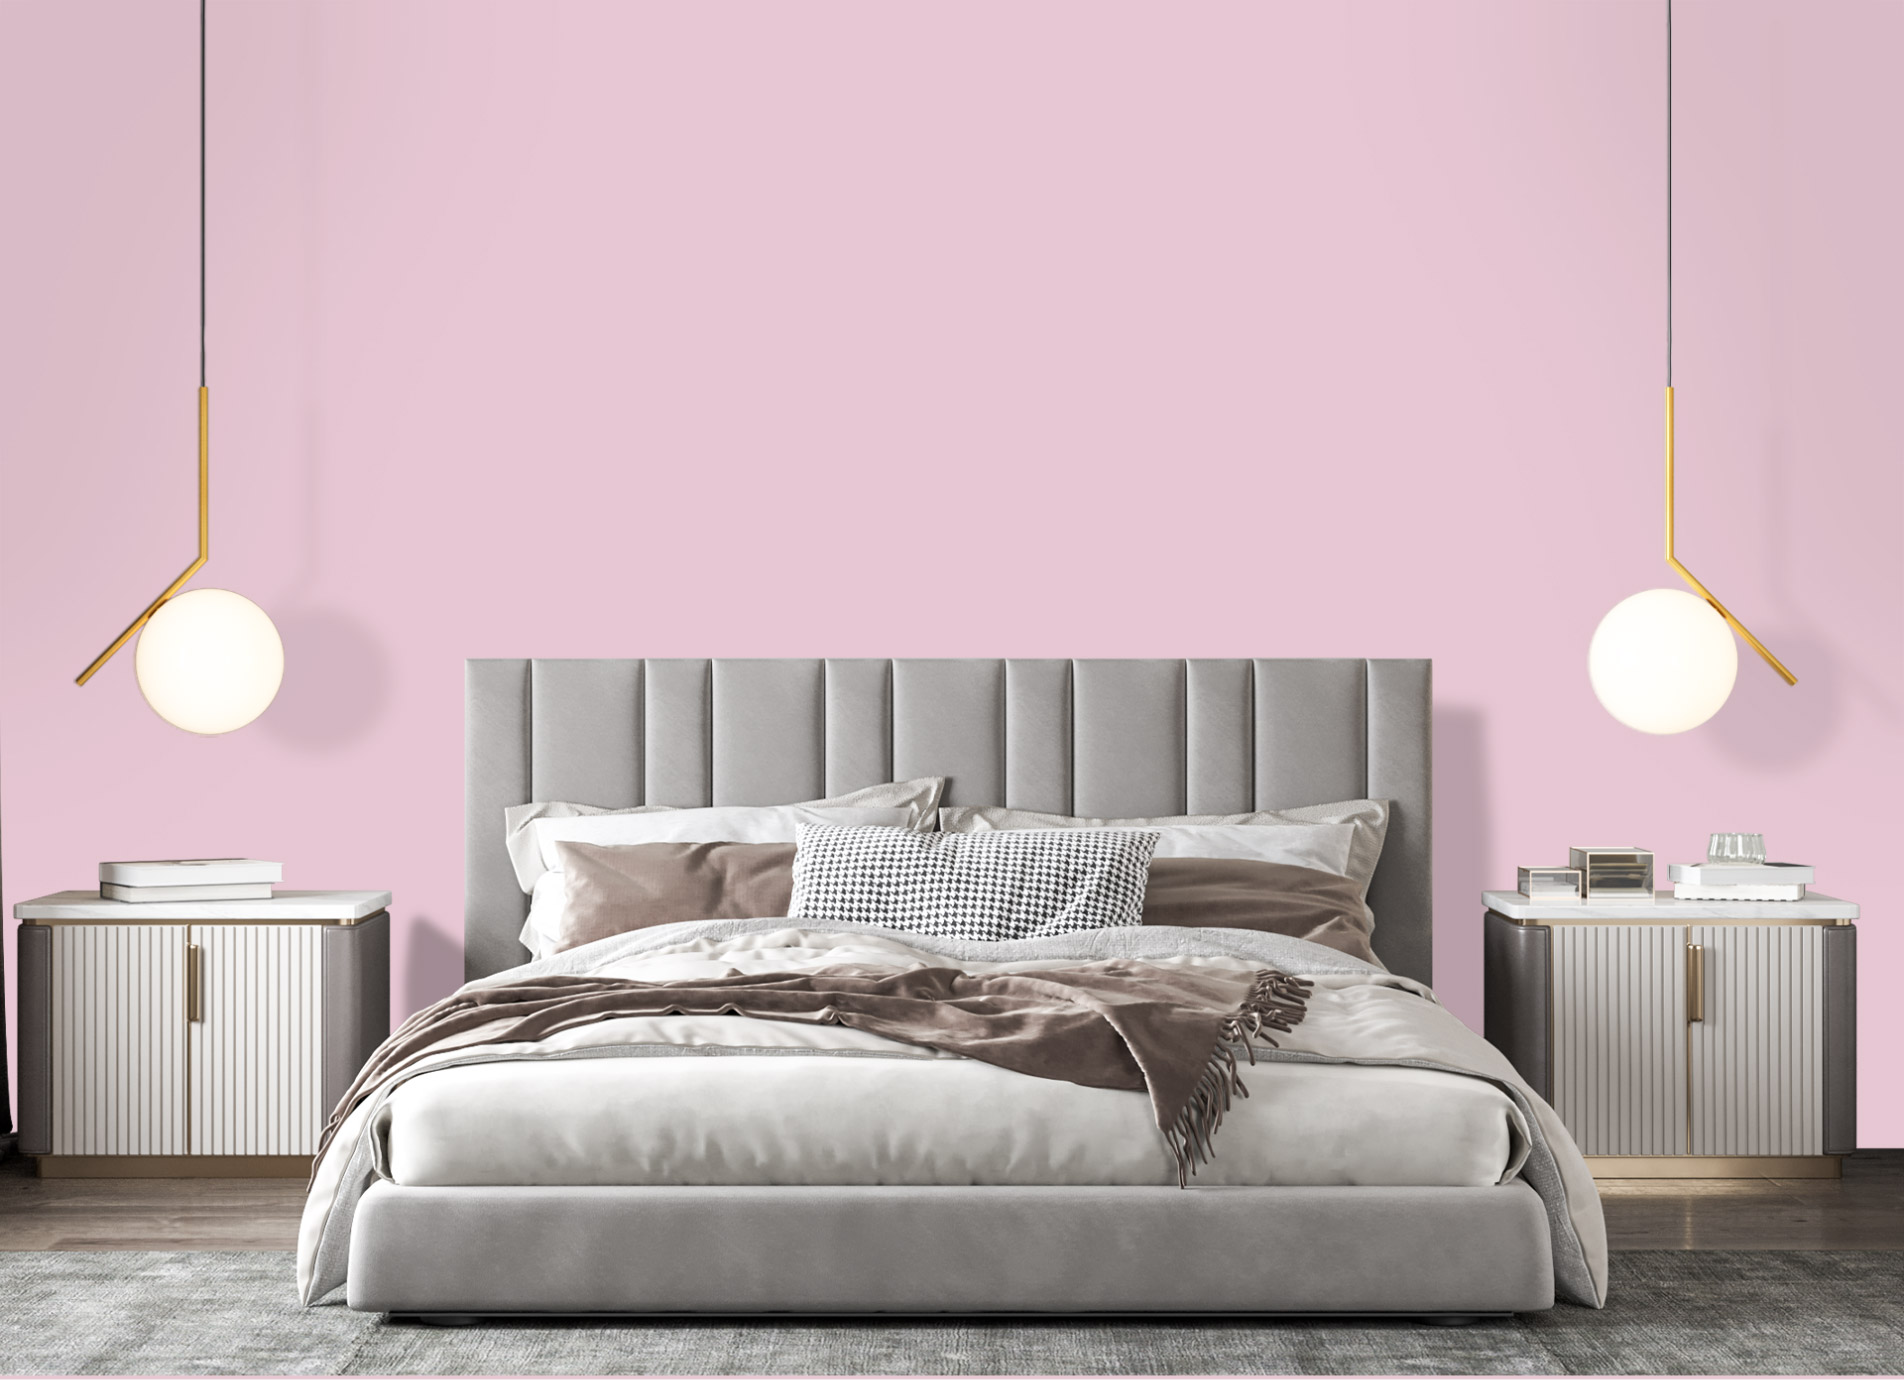 Căn phòng màu hồng nhã nhặn được trang trí đơn giản